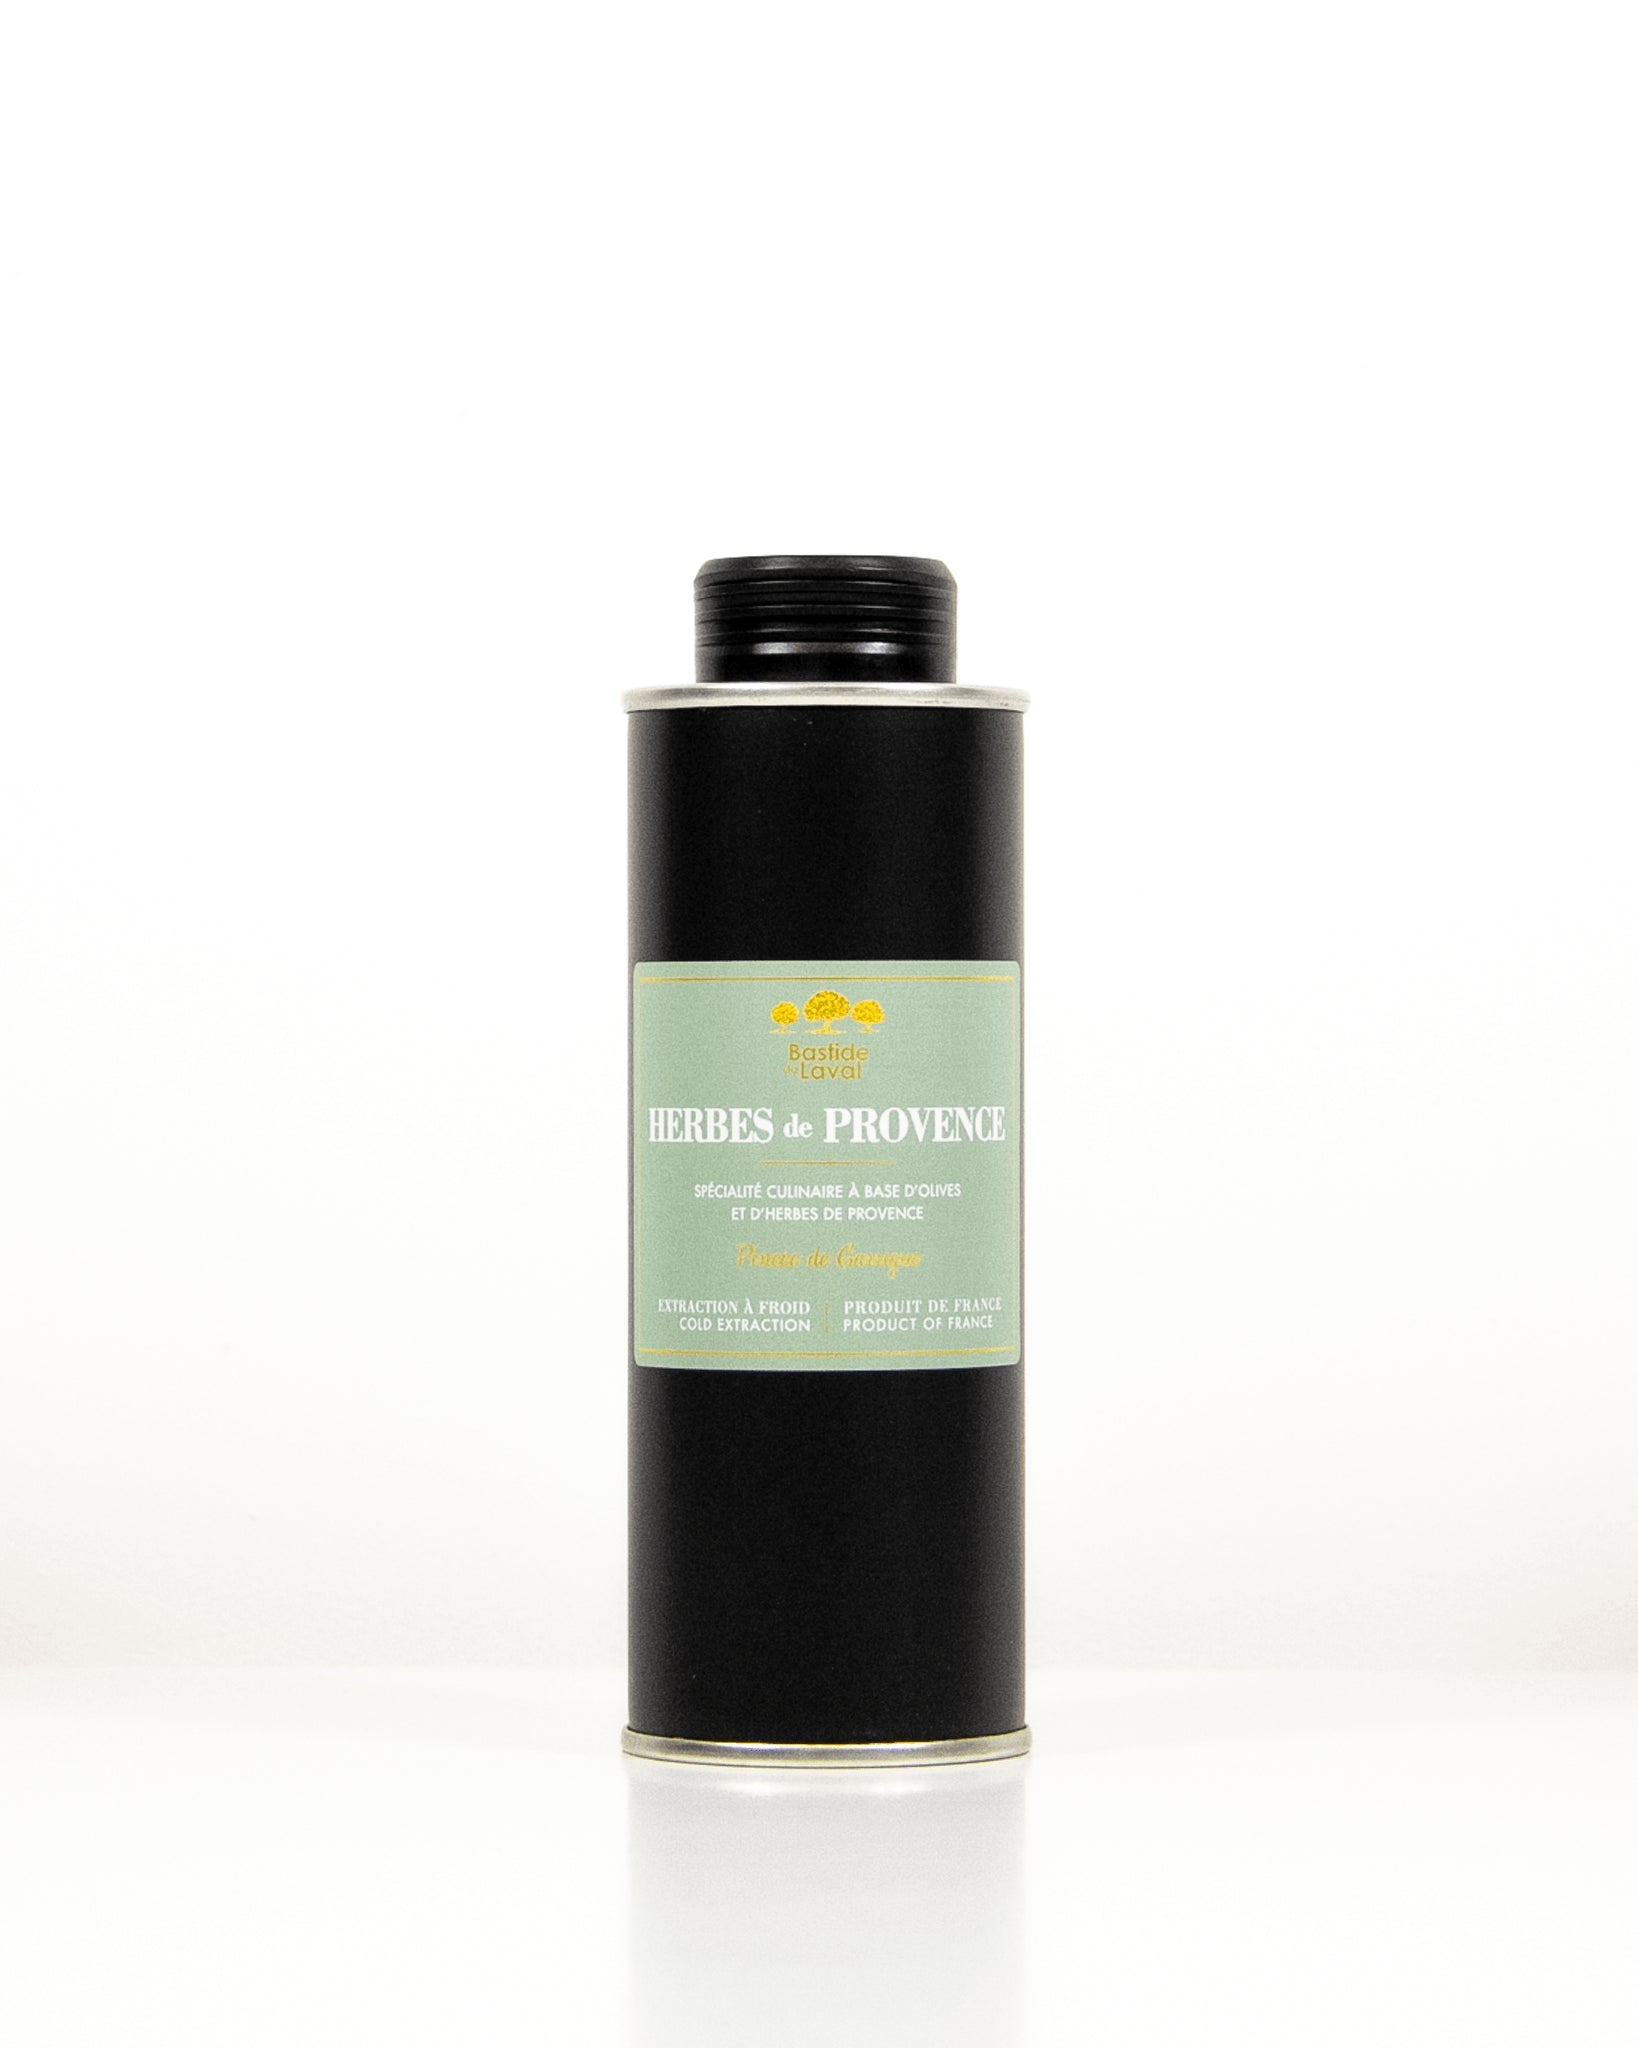 Olivenöl mit Kräutern der Provence 25cl